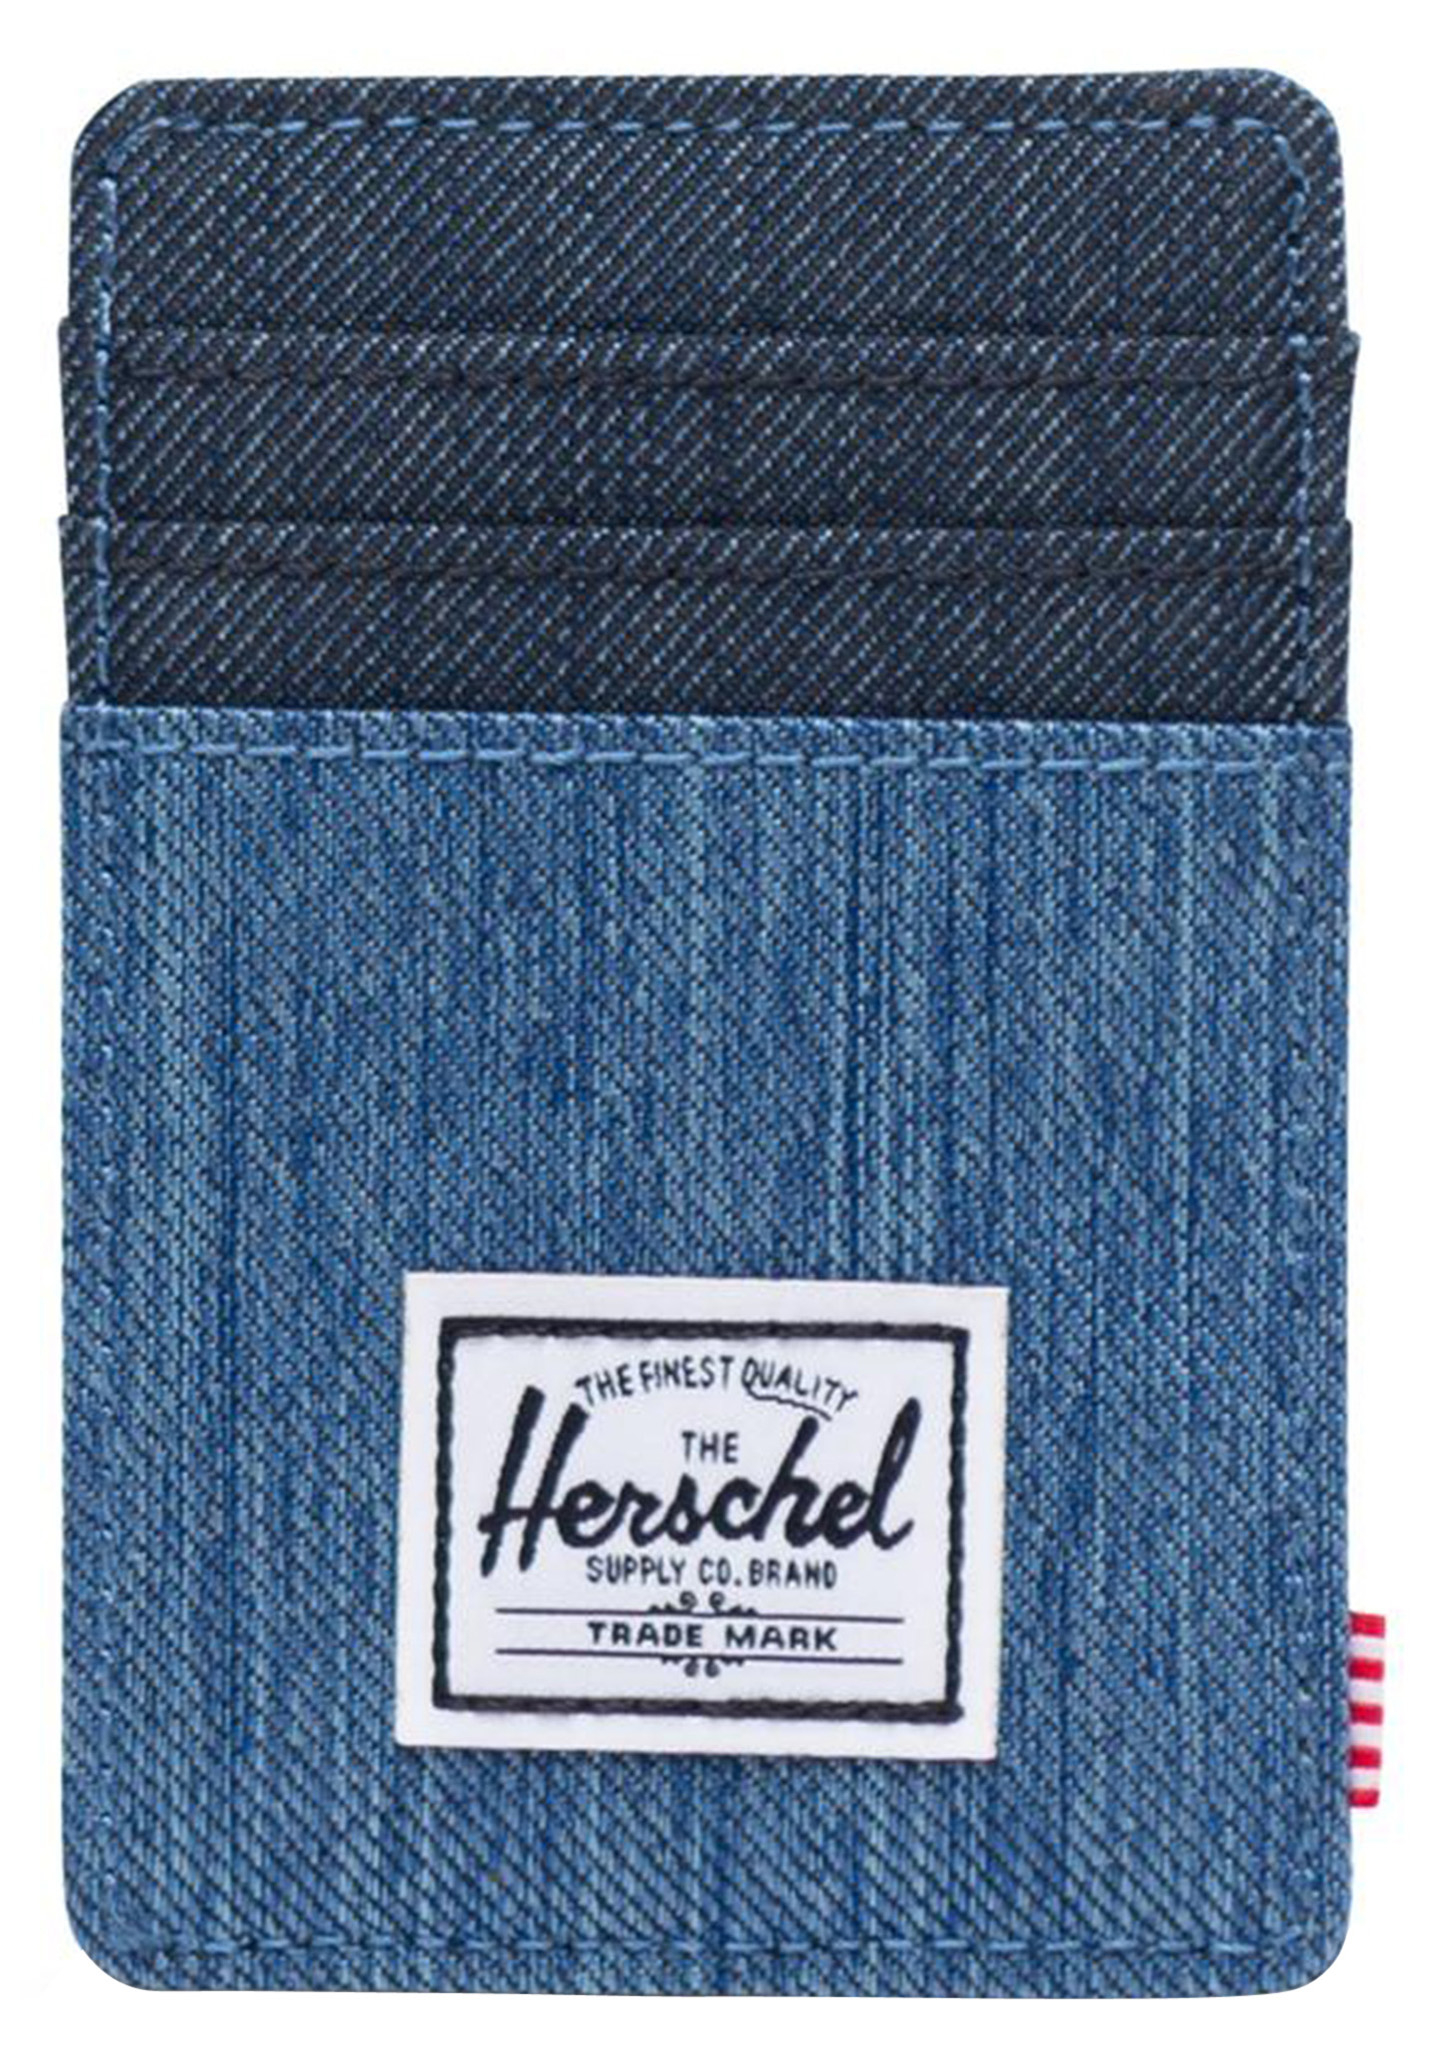 Herschel Supply Co. Raven Stoff Portemonnaie verblasster denim/indigo-denim One Size